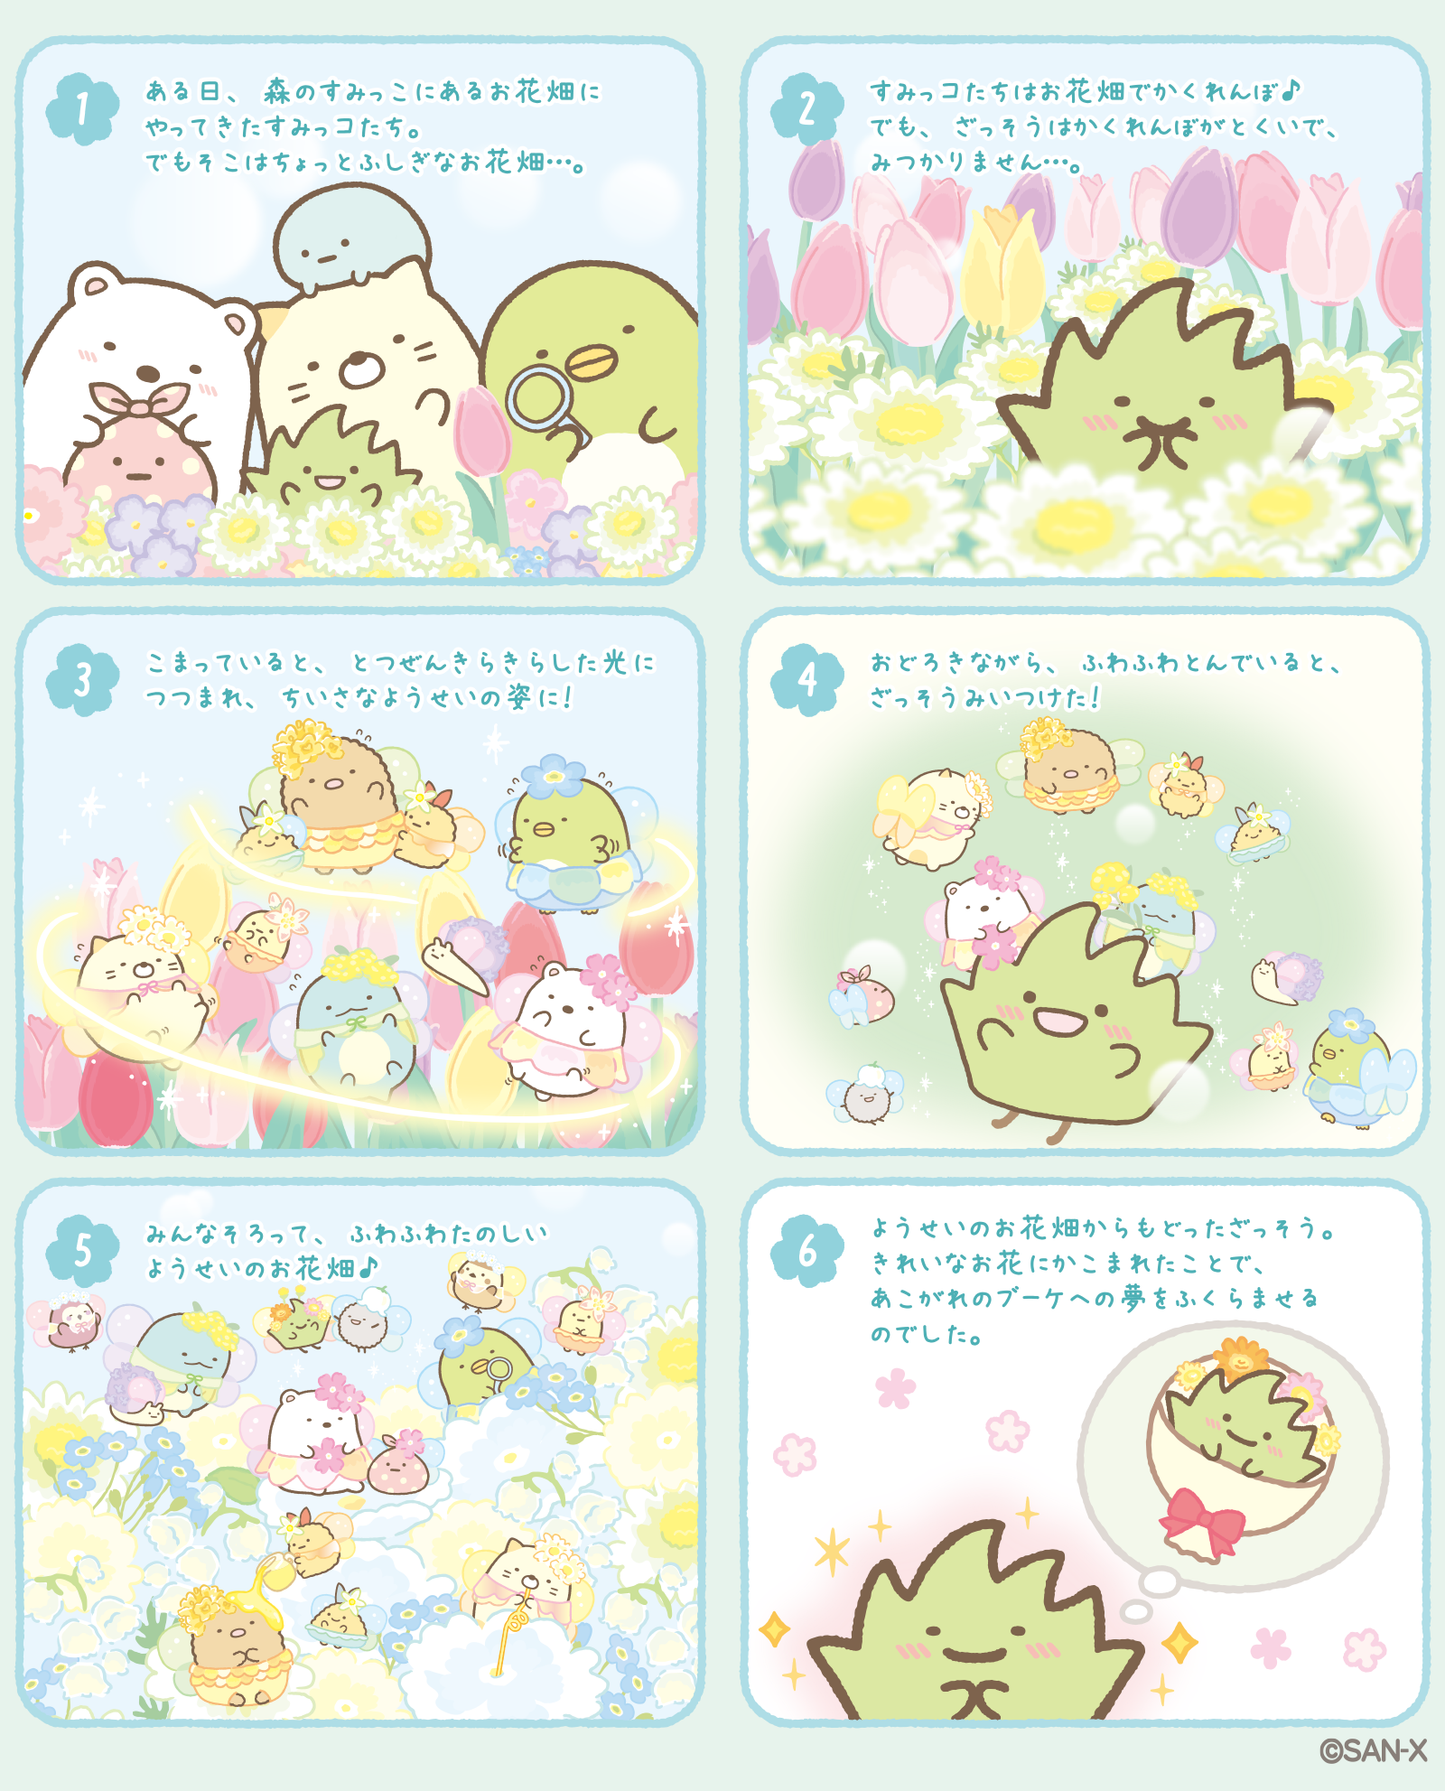 Sumikko Gurashi | Zassou & Fairy's Flower Garden | Tapioca (Flower) Tenori Mini Plush